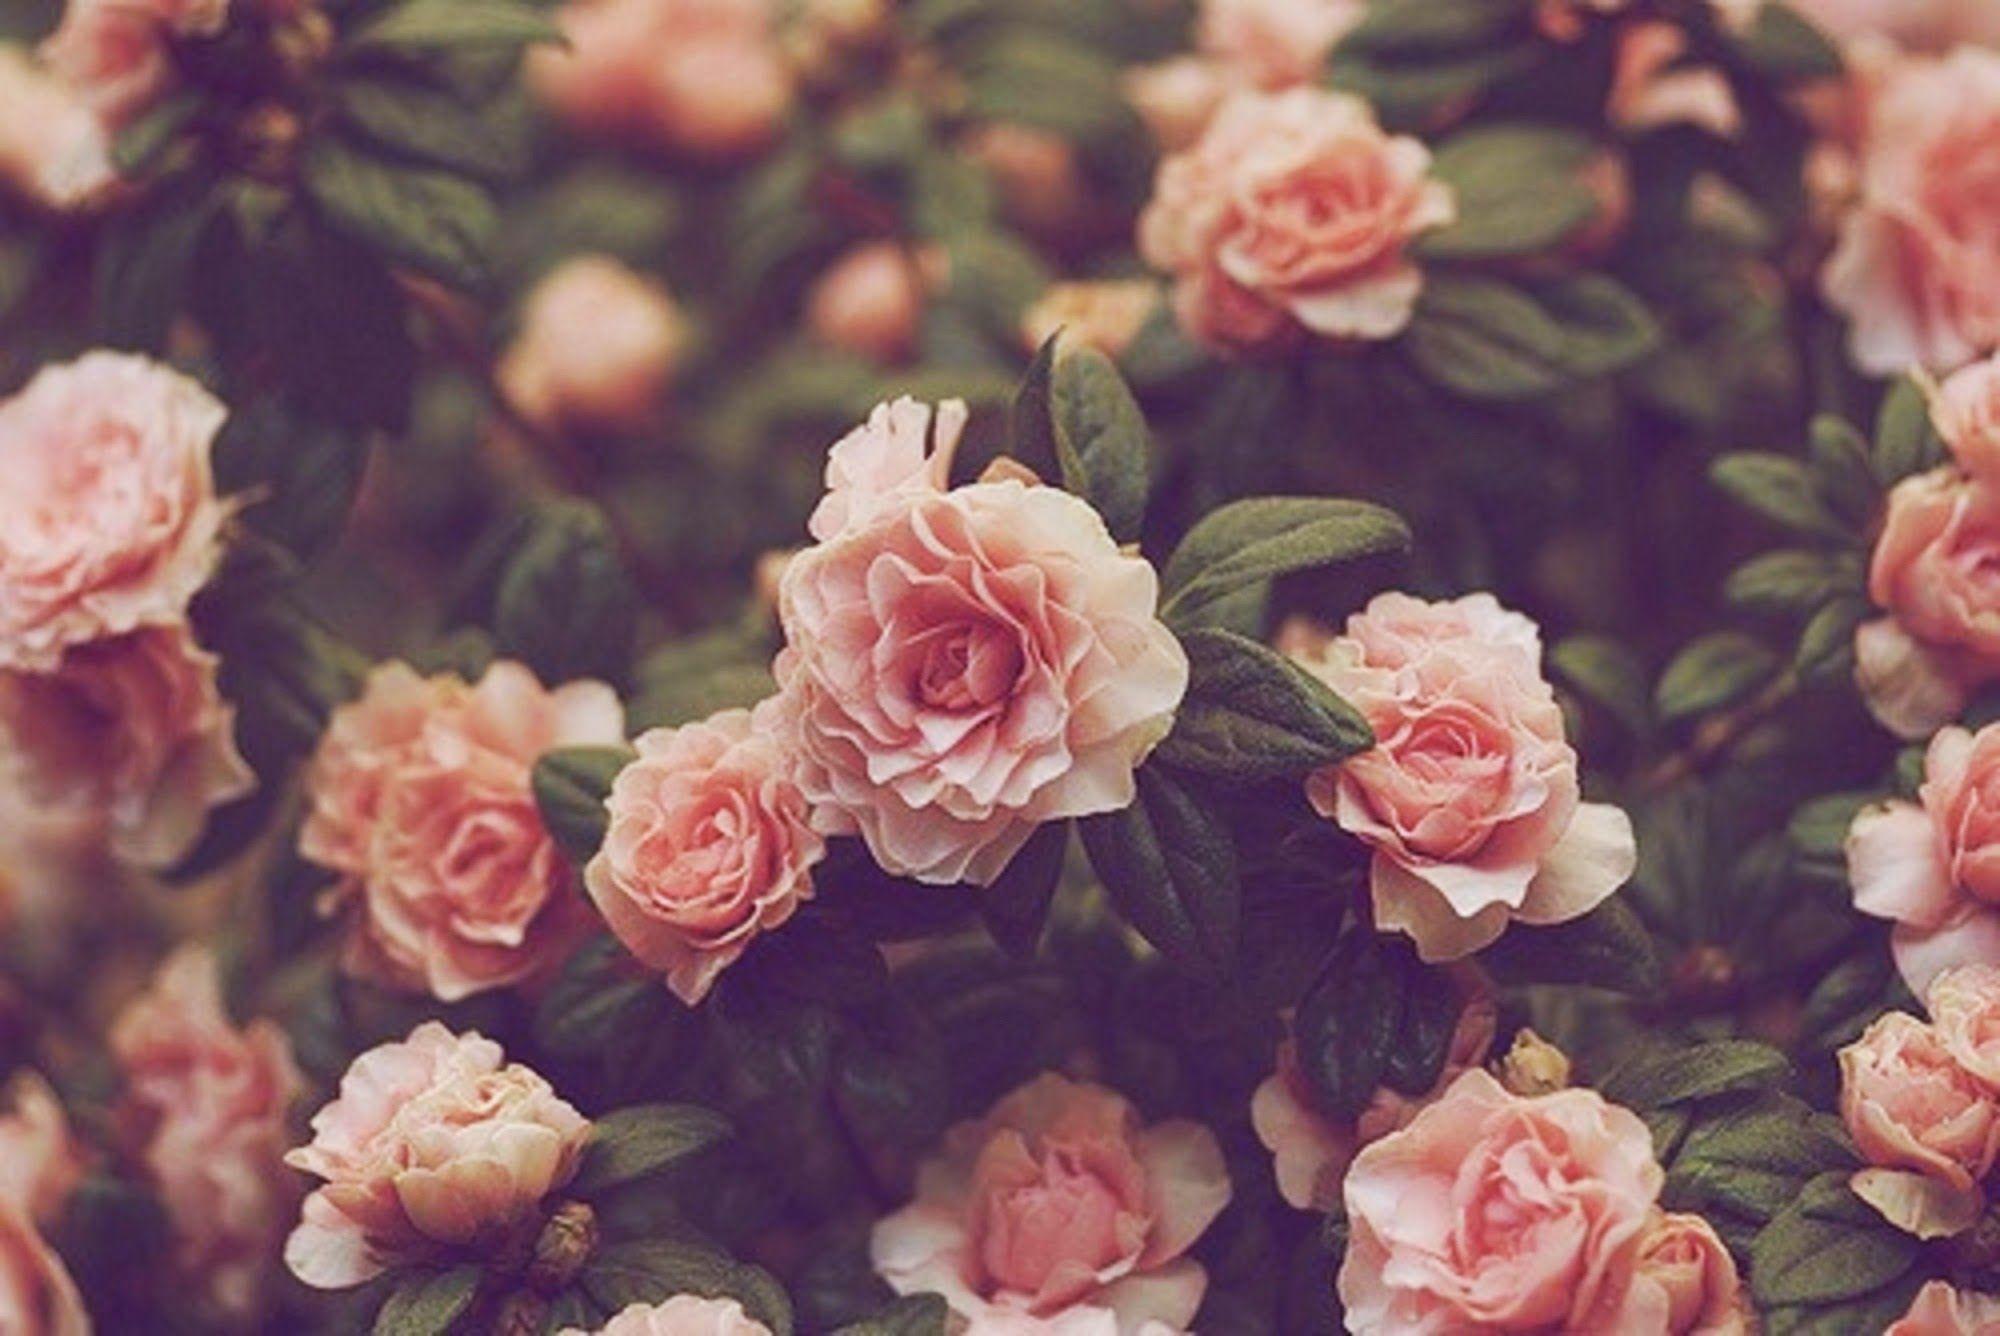 Vintage Flowers Tumblr